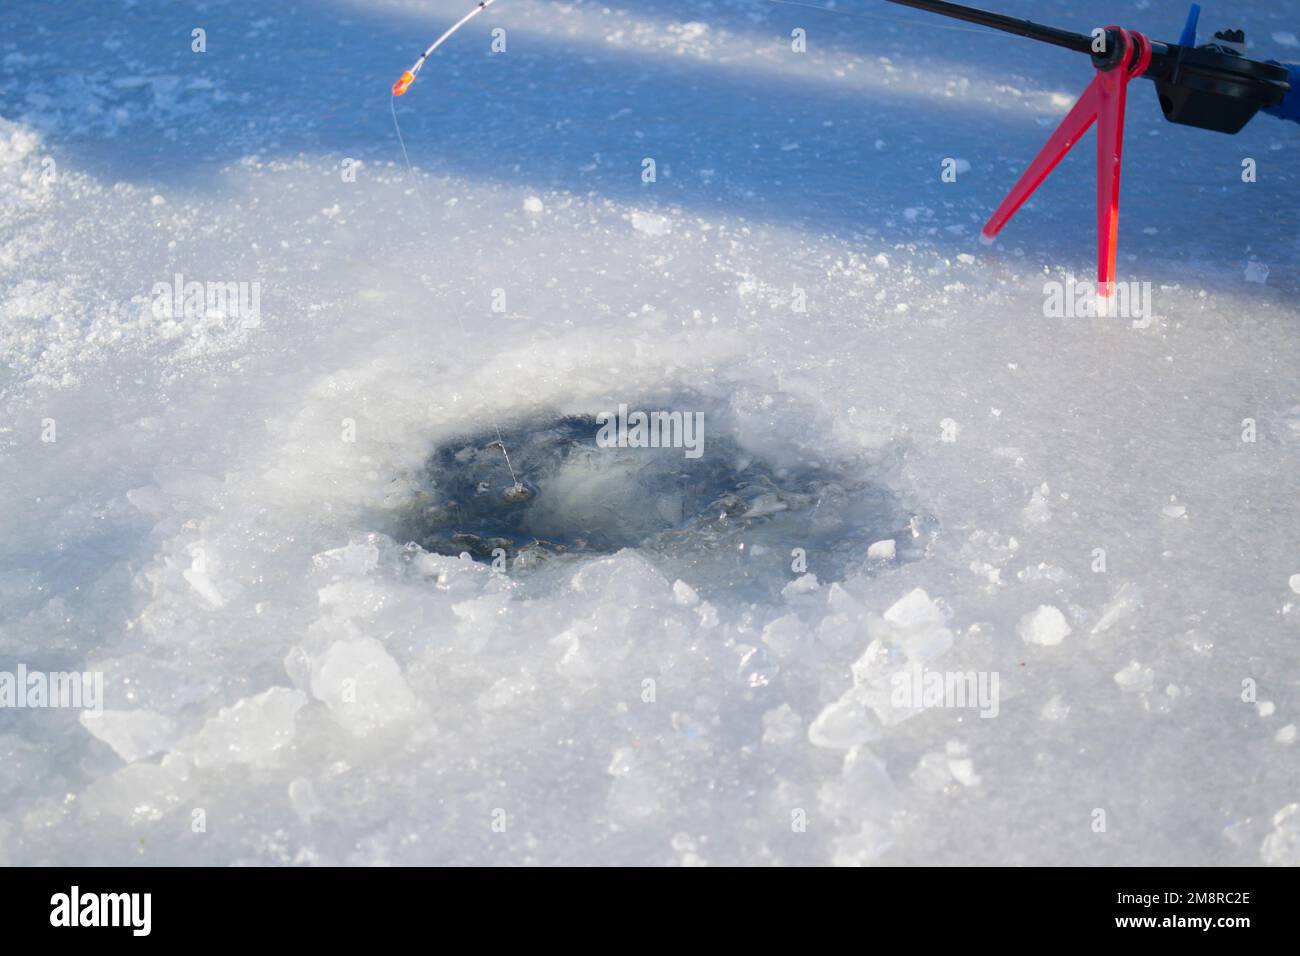 Pêche sous la glace en hiver. Pêche sous la glace en hiver. Une petite canne à pêche se trouve près d'un trou dans la glace d'une rivière par beau temps. En hiver Banque D'Images